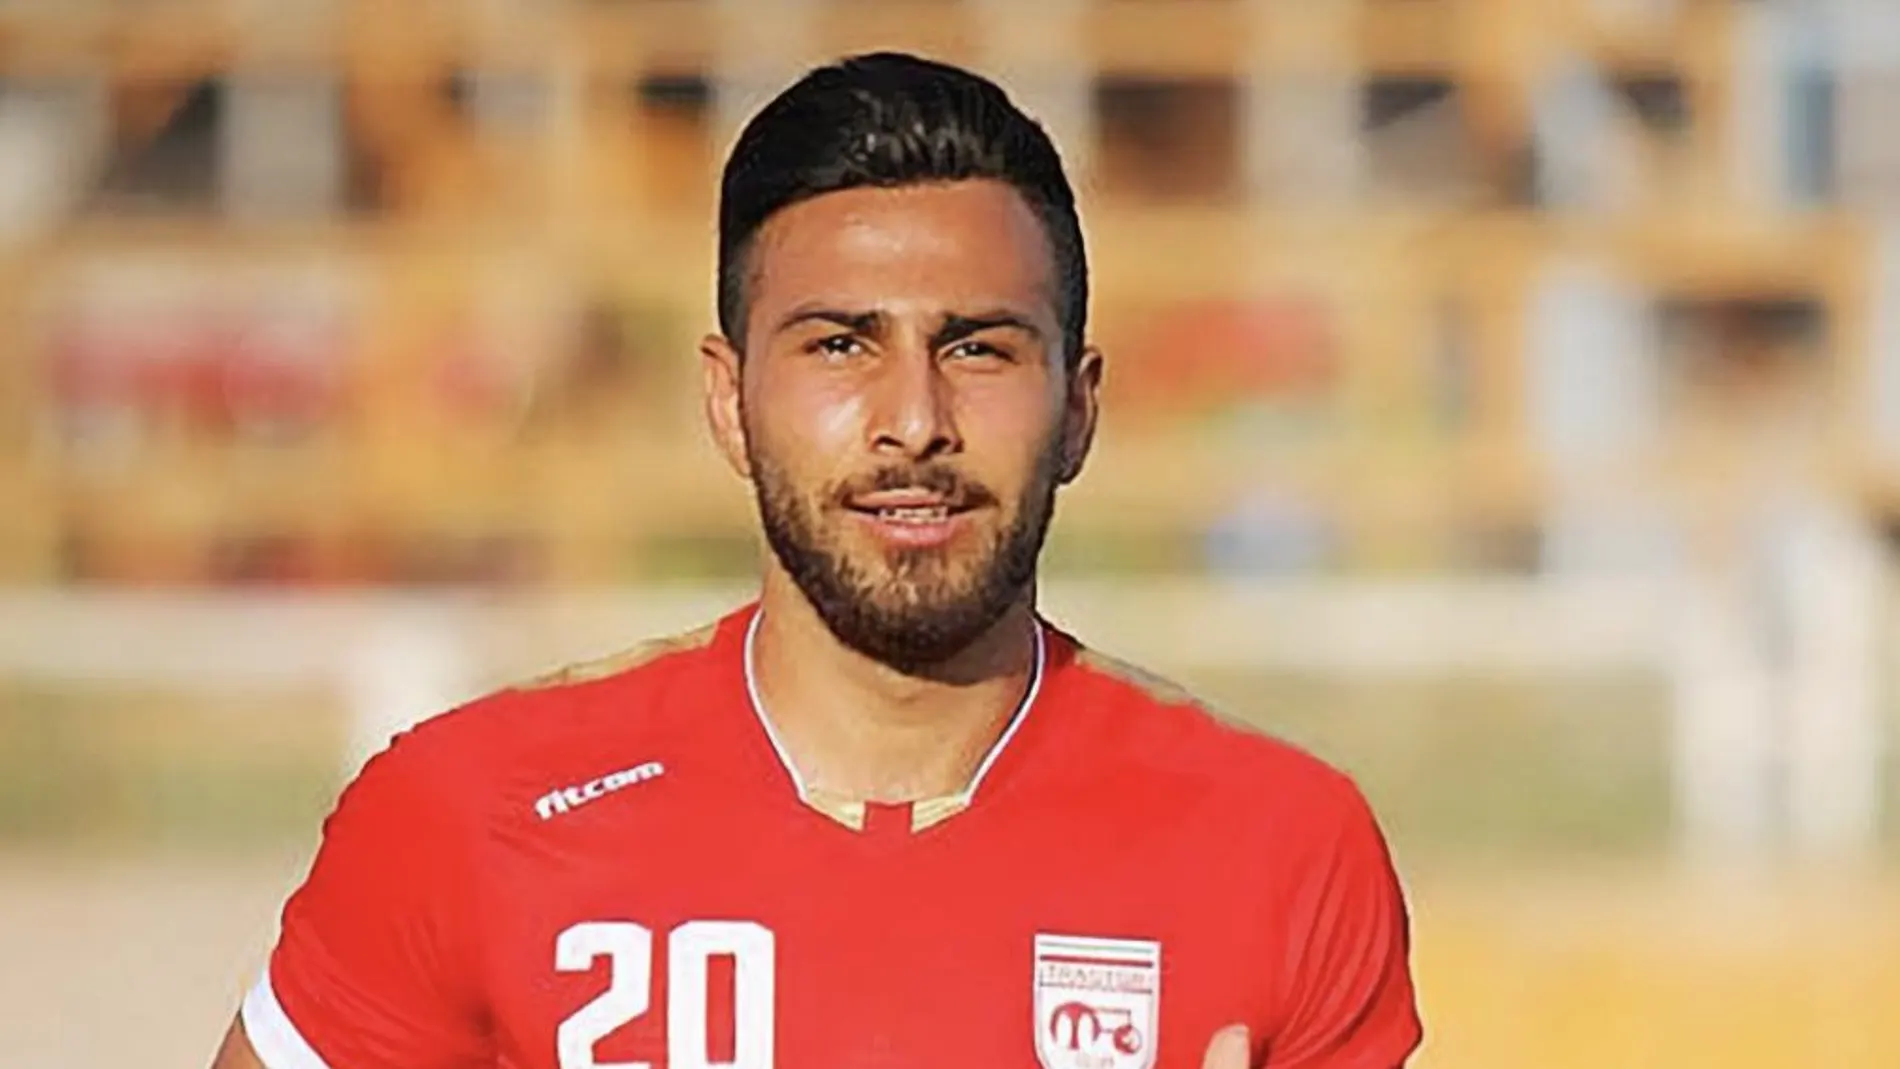 El futbolista Amir Nasr Azadani durante un partido de fútbol